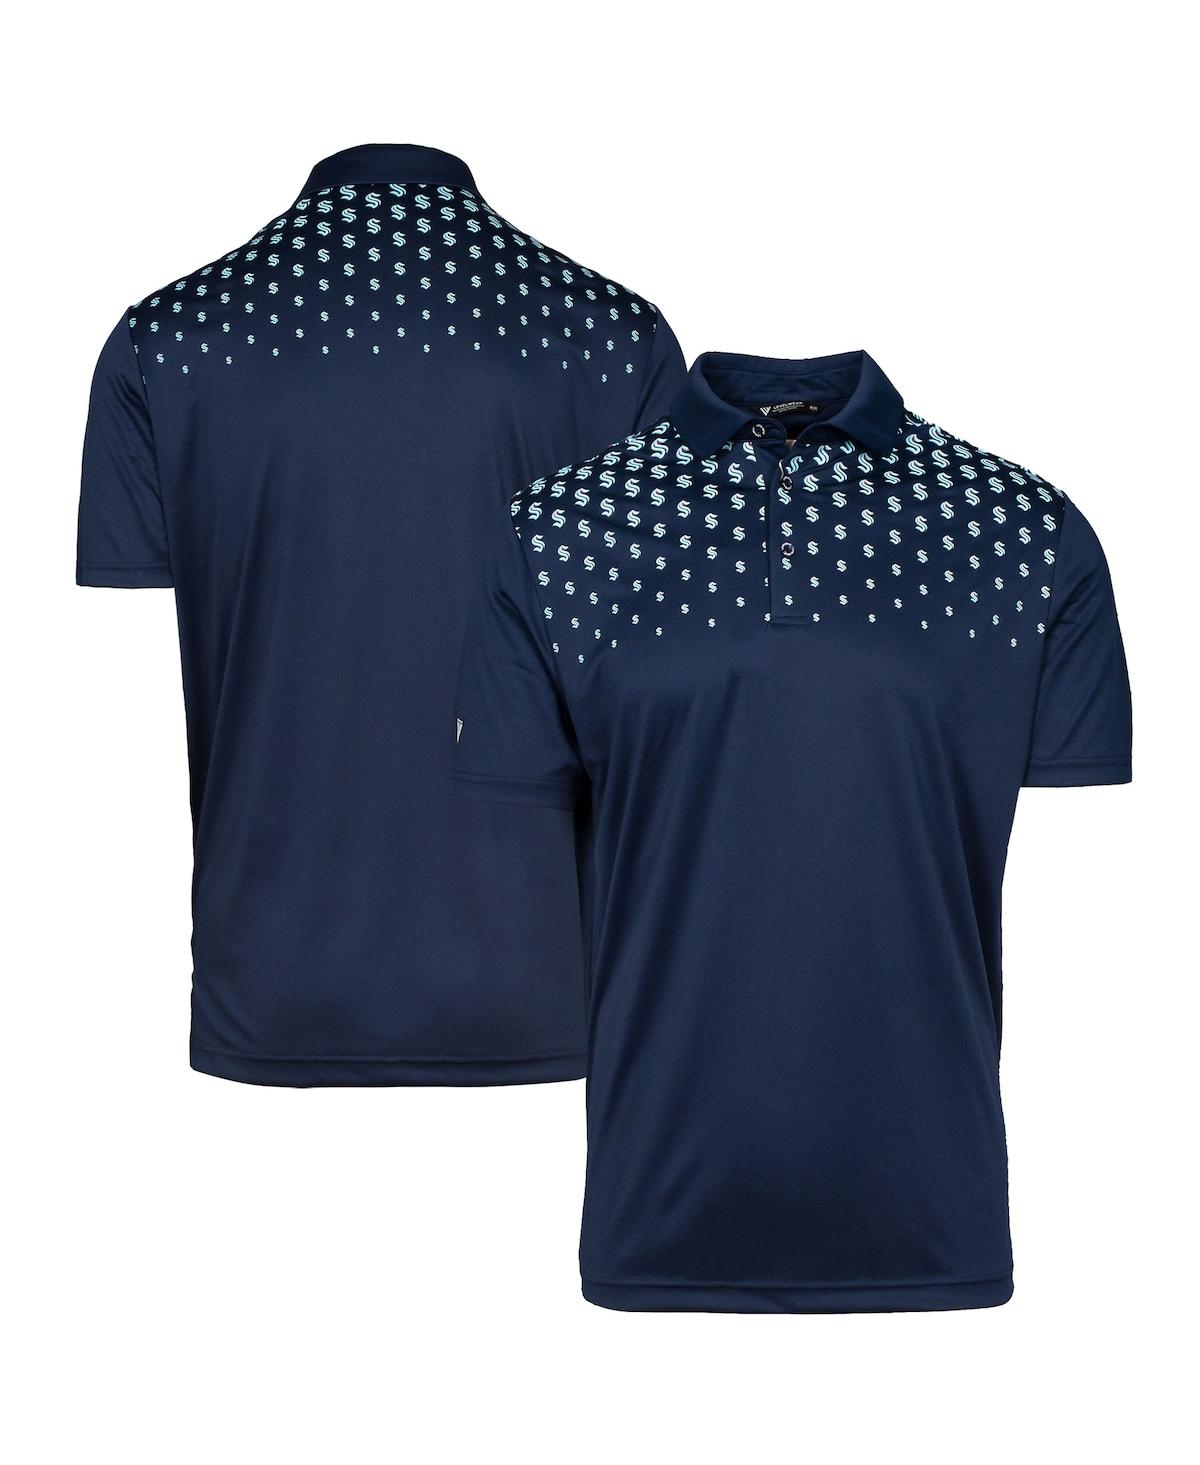 Men's LevelWear Navy Seattle Kraken Nhl x Pga Original Polo Shirt - Navy